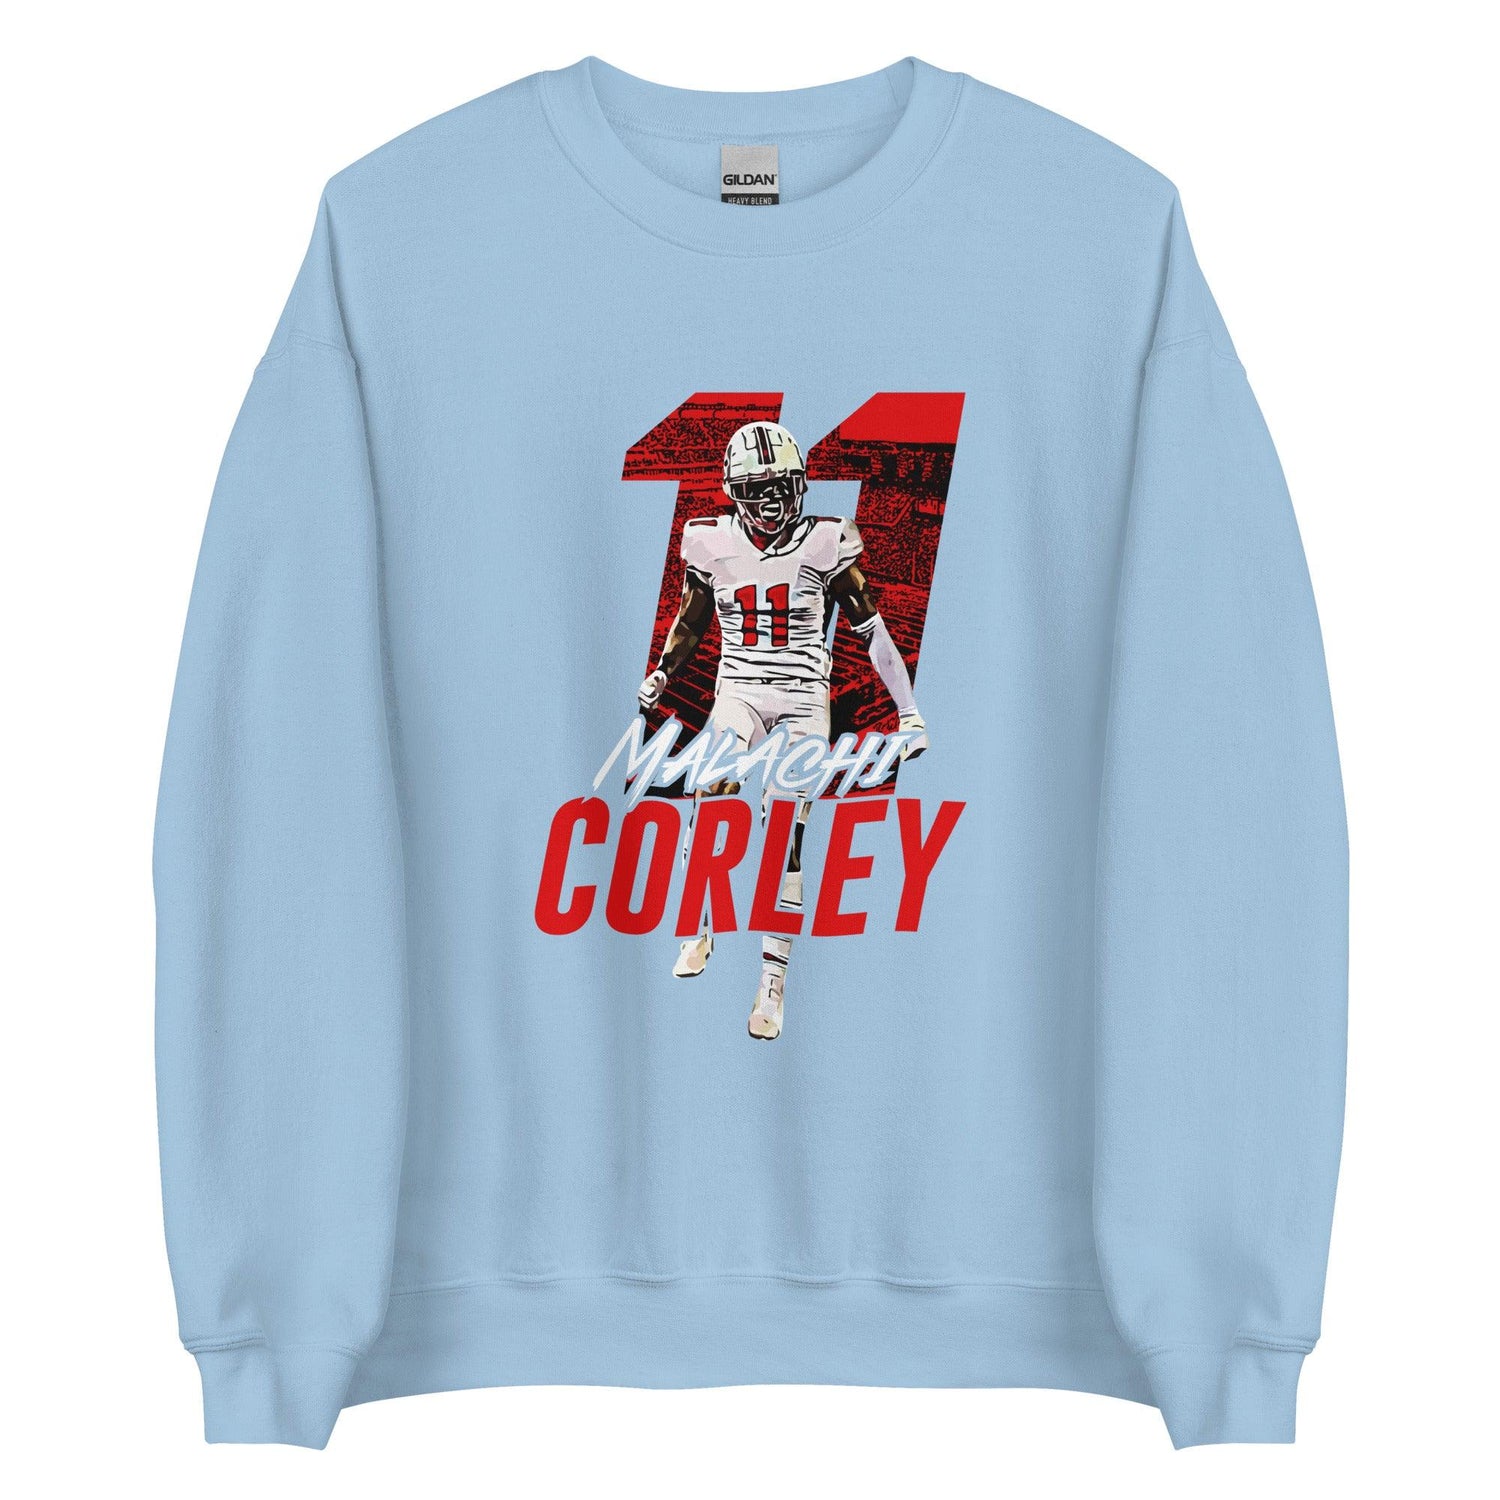 Malachi Corley “Essential” Sweatshirt - Fan Arch